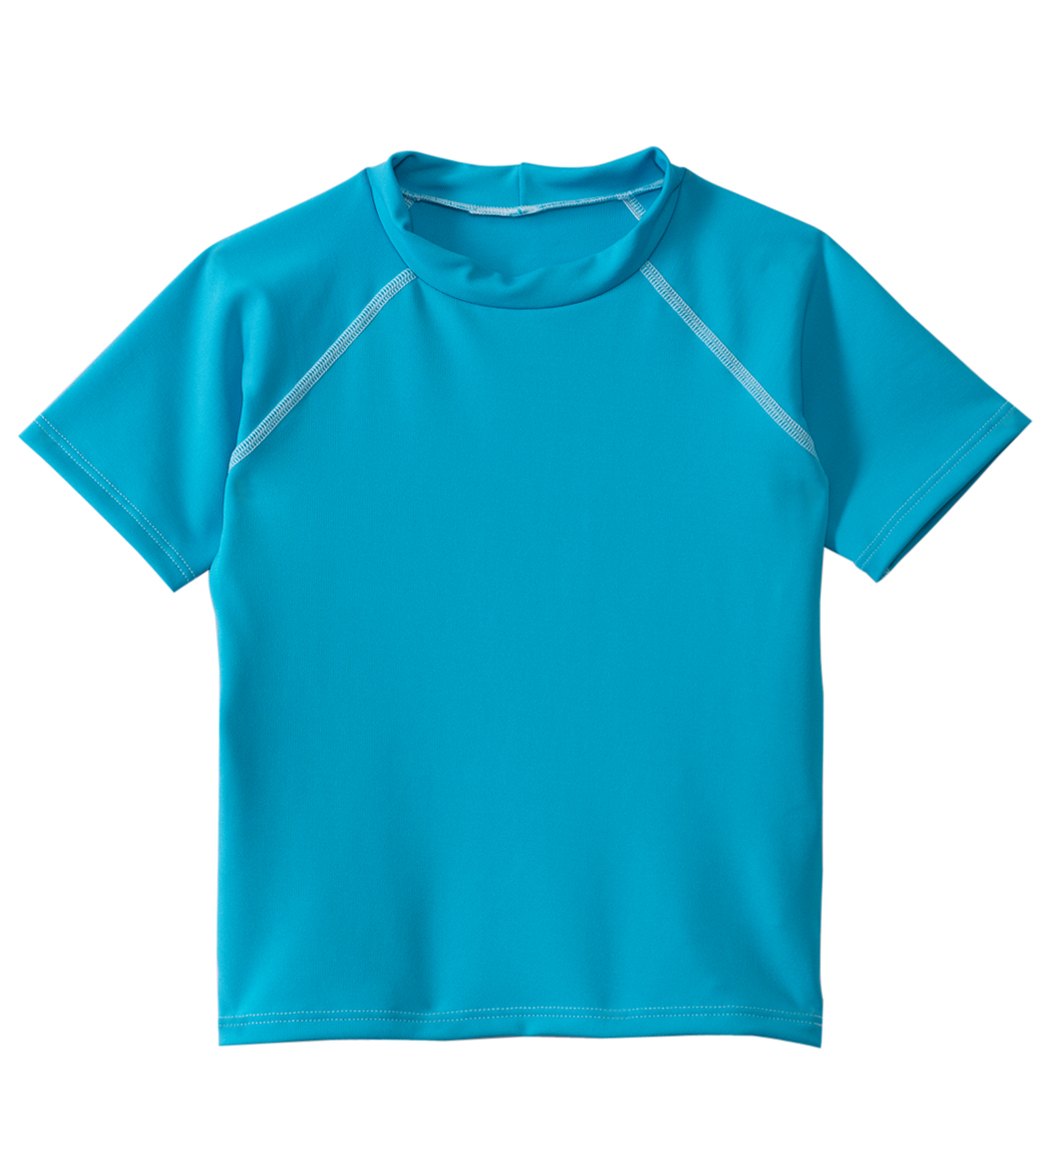 Dolfin Men's Kids' Rashguard 2T-7 - Turquoise 3T - Swimoutlet.com